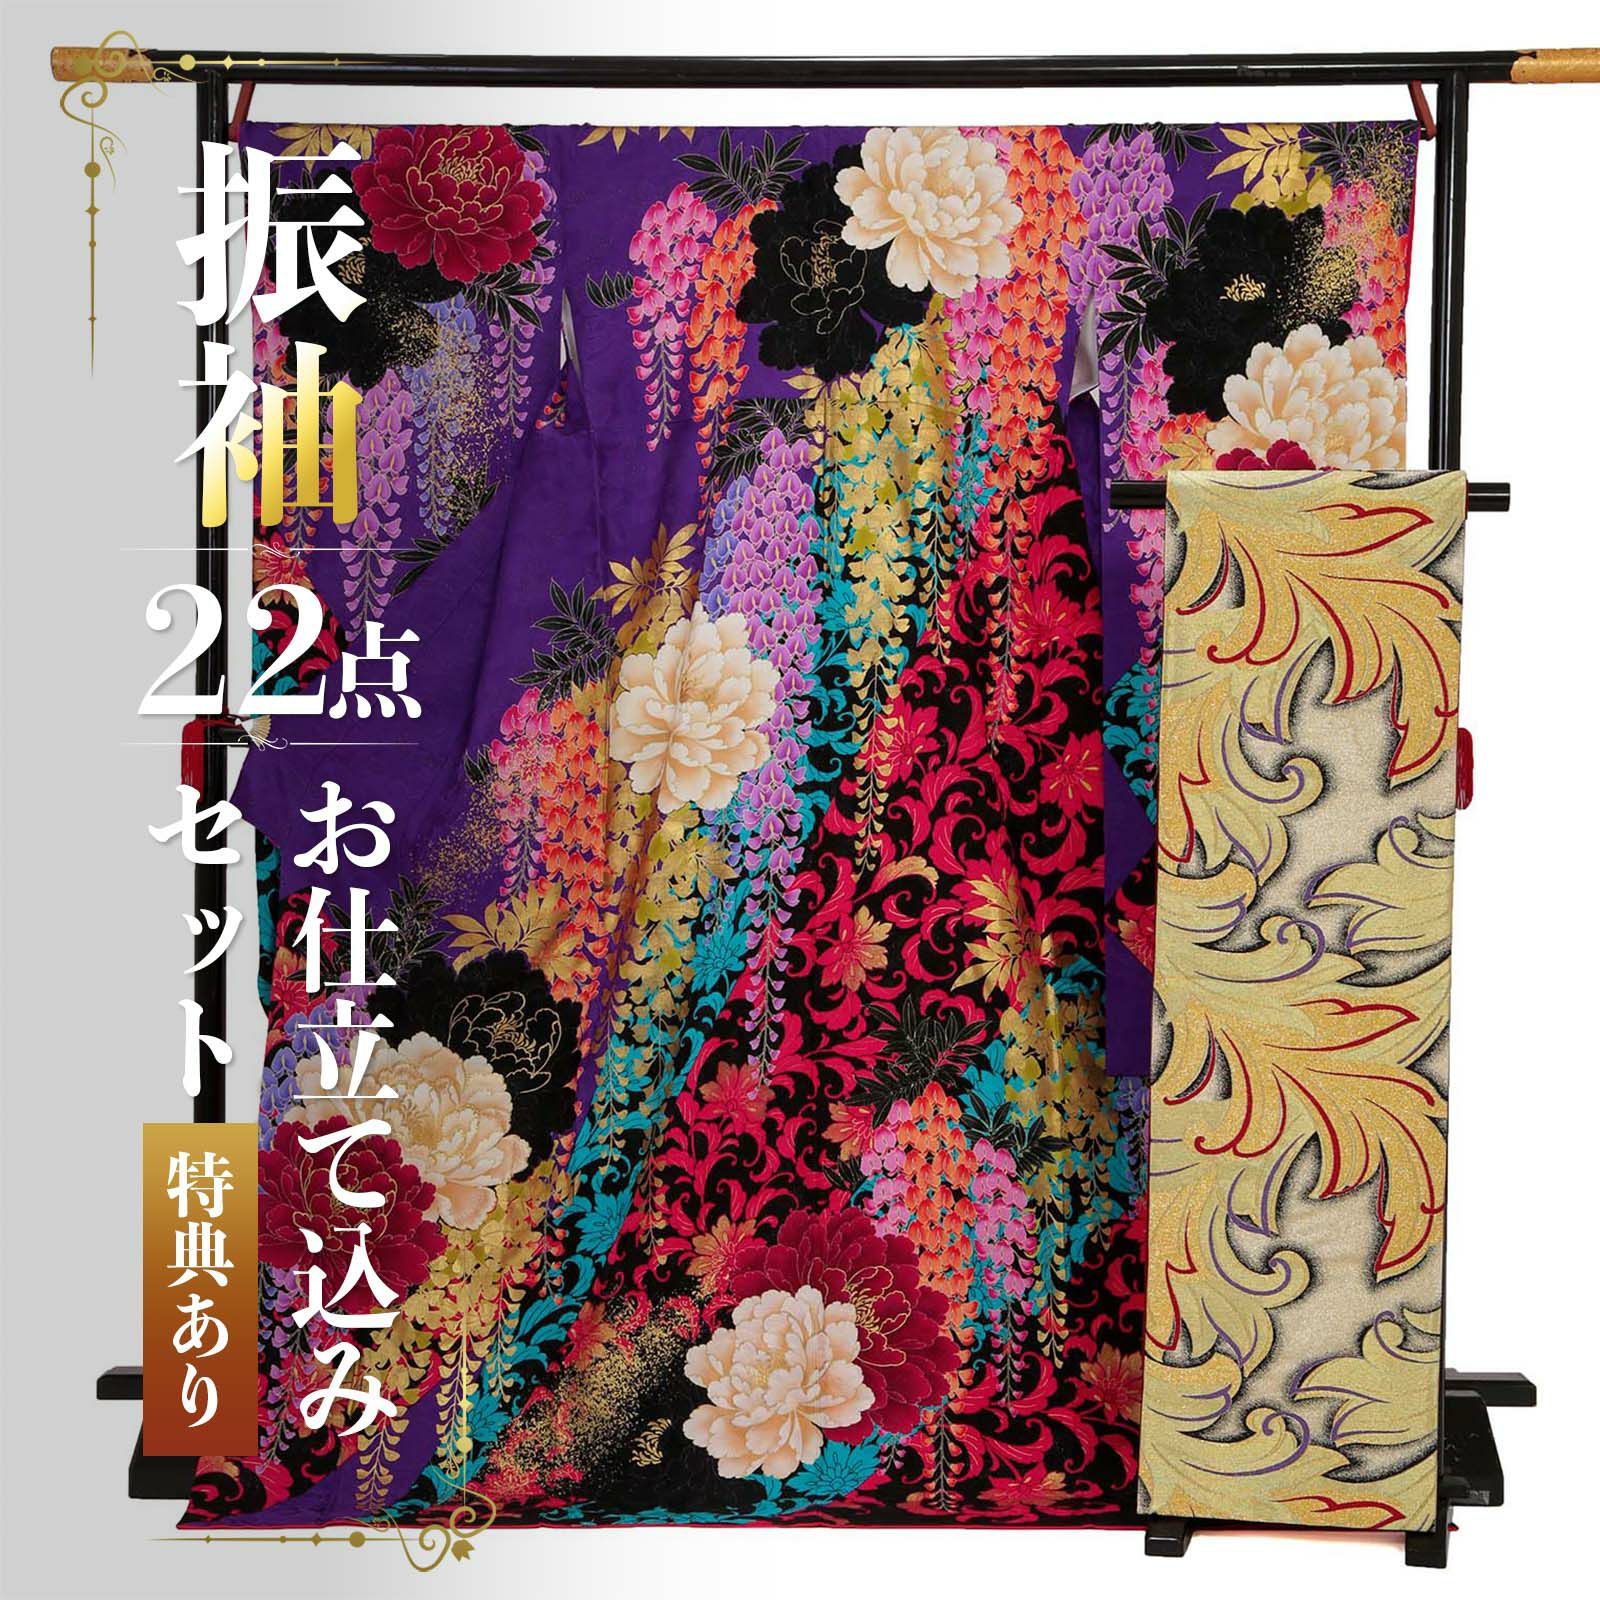 未仕立て 振袖 22点セット「Lako Kula 紫 大牡丹と藤」仮絵羽 振り袖